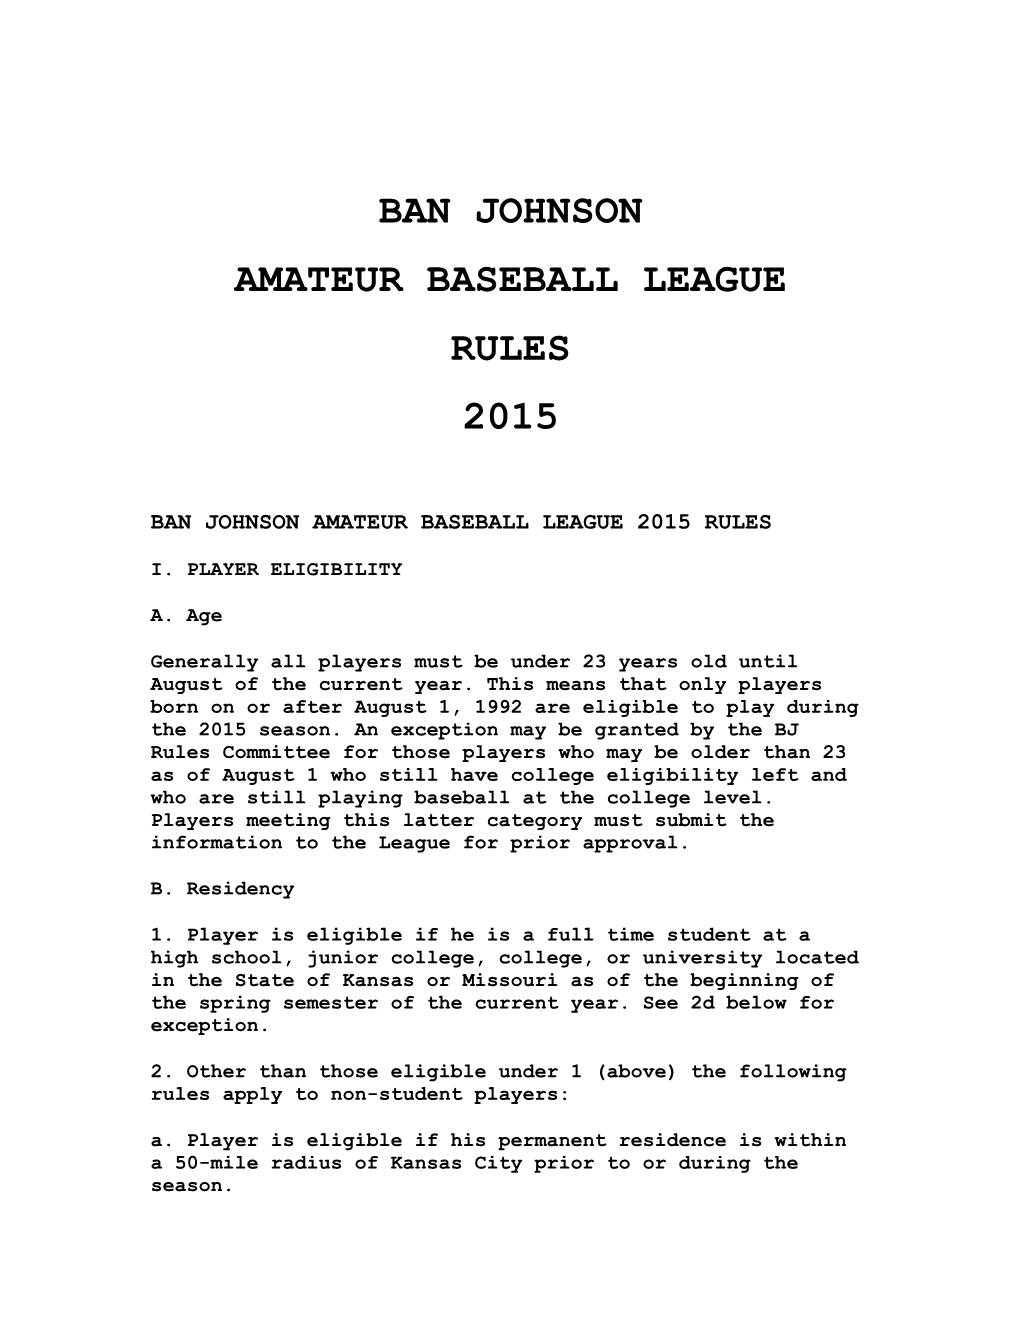 Ban Johnson Amateur Baseball League Rules 2015